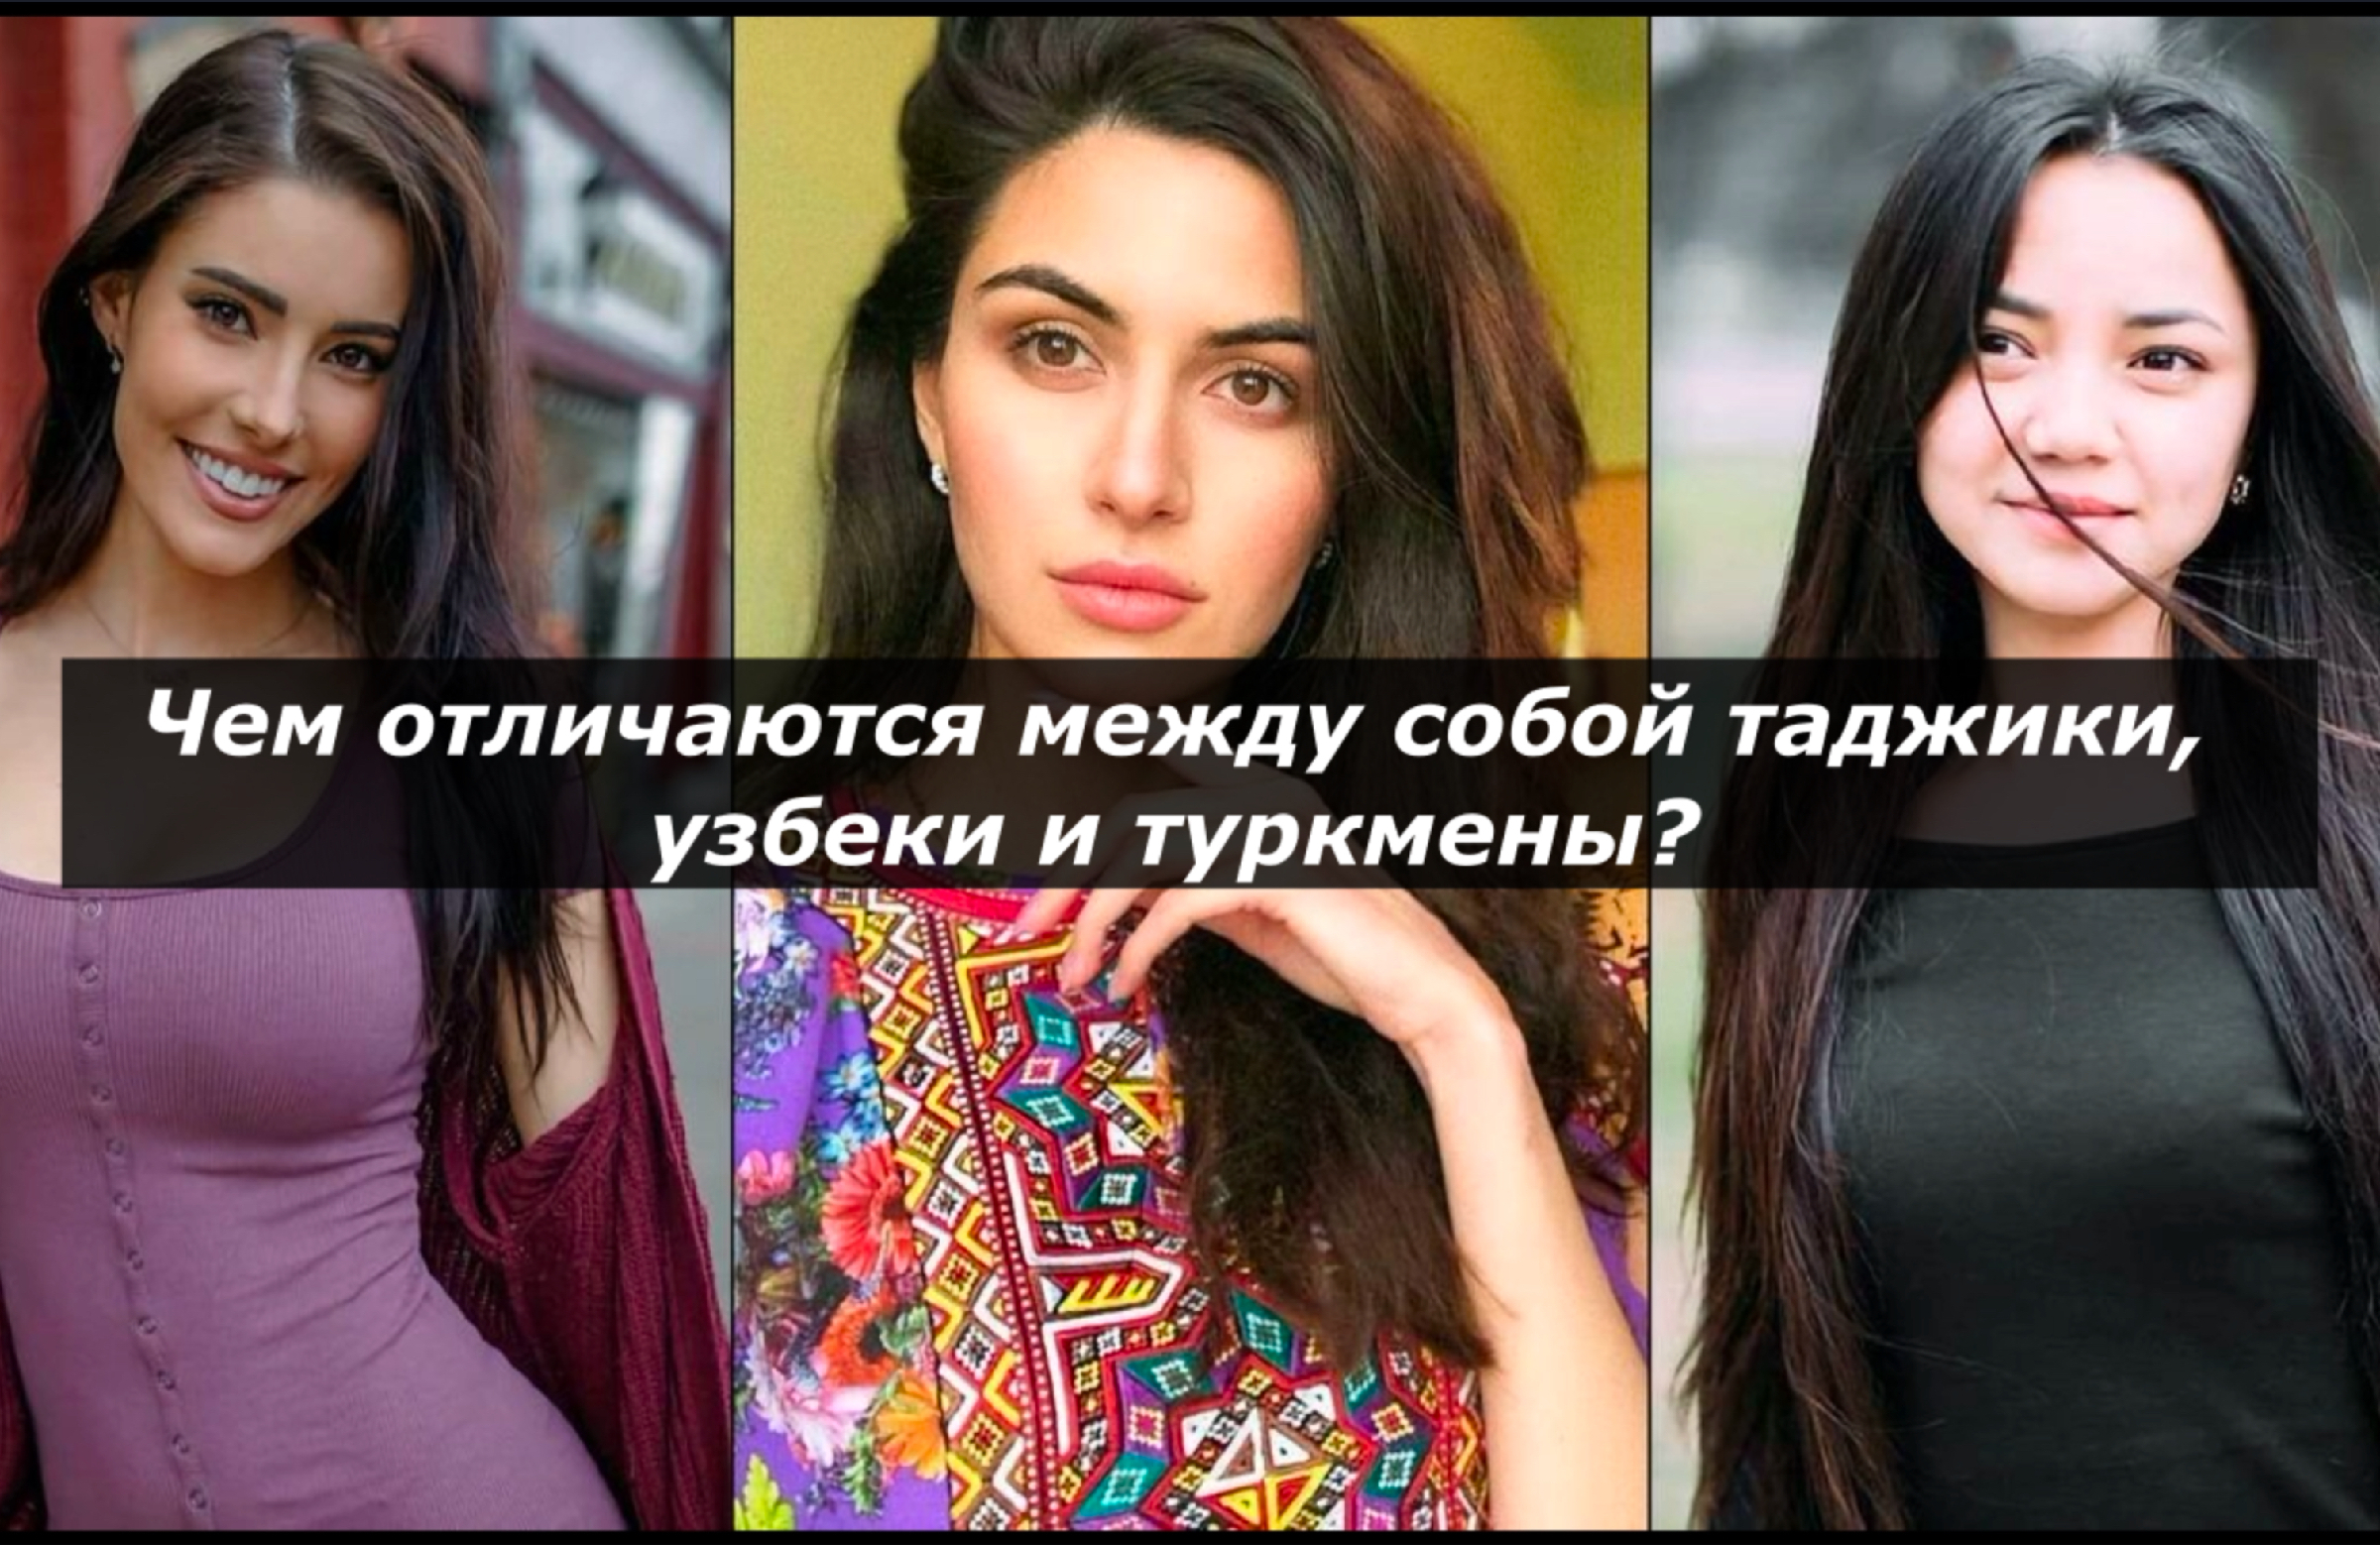 Как таджика отличить от узбека по внешности. Отличие узбека от таджика. На кого похожи узбеки внешне. Таджик и узбек отличия внешне фото. Как отличить таджика от узбека по внешности.